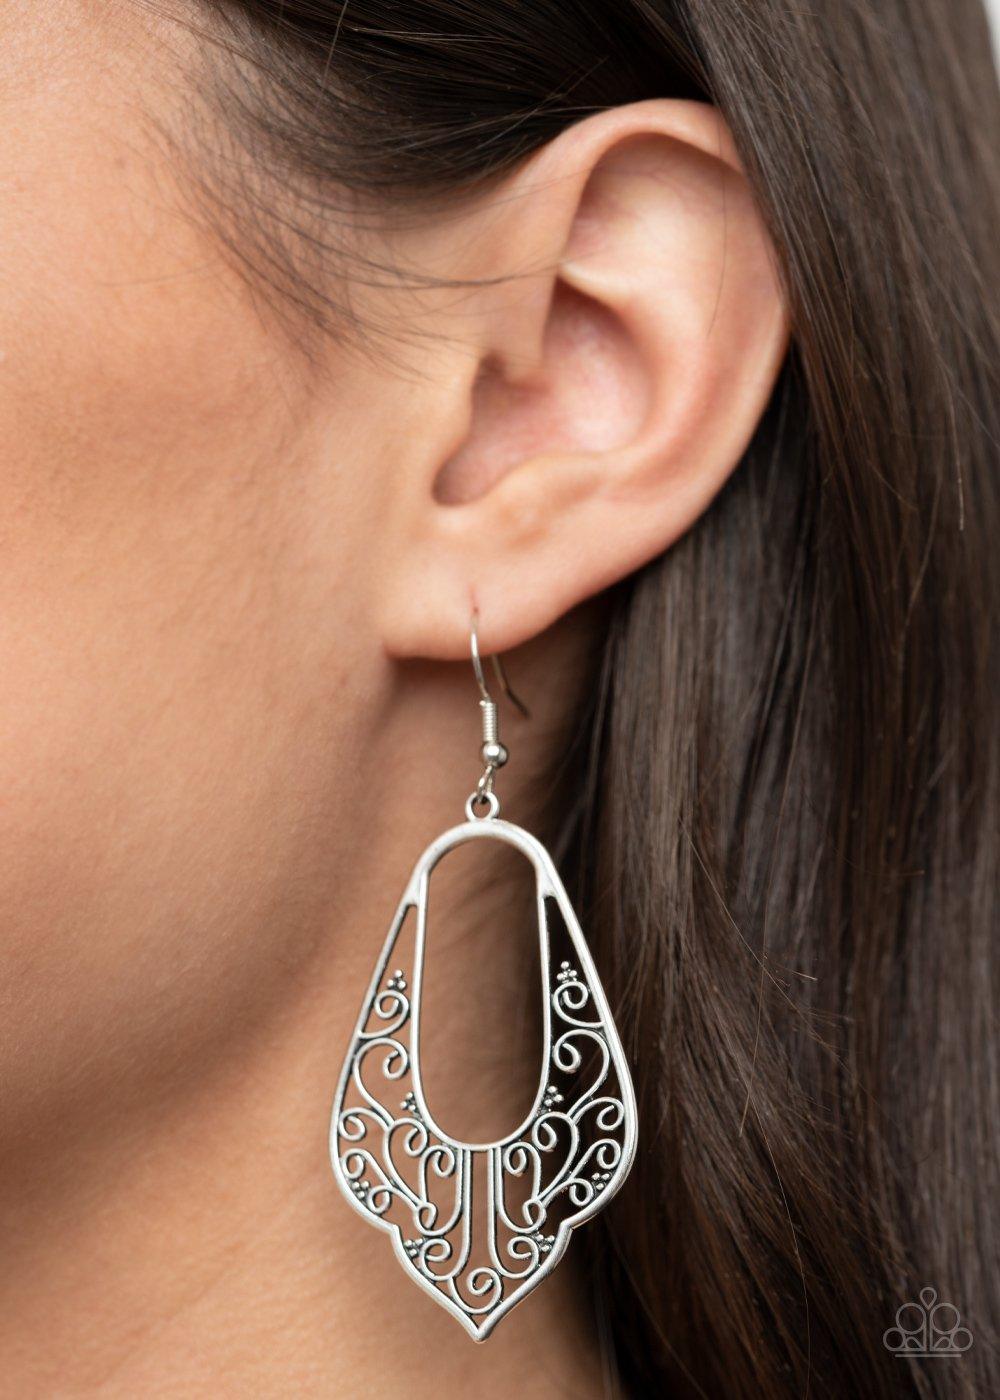 Grapevine Glamour Silver Earrings - Jewelry by Bretta